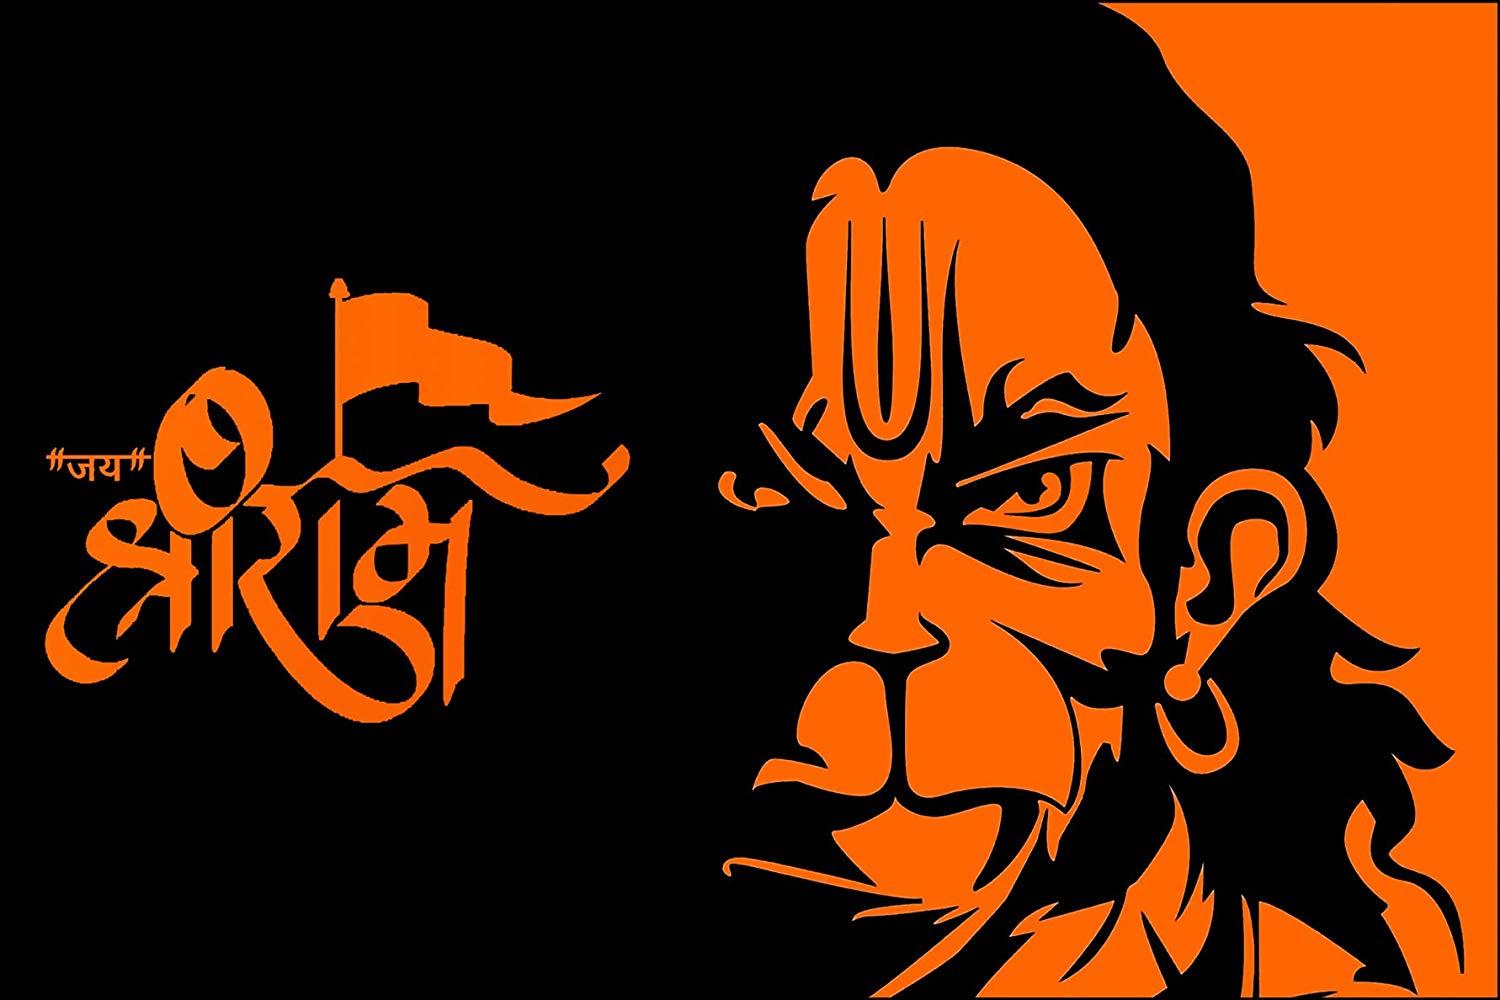 God Hanuman Png Image Source - Hanuman God Transparent PNG - 1200x630 -  Free Download on NicePNG